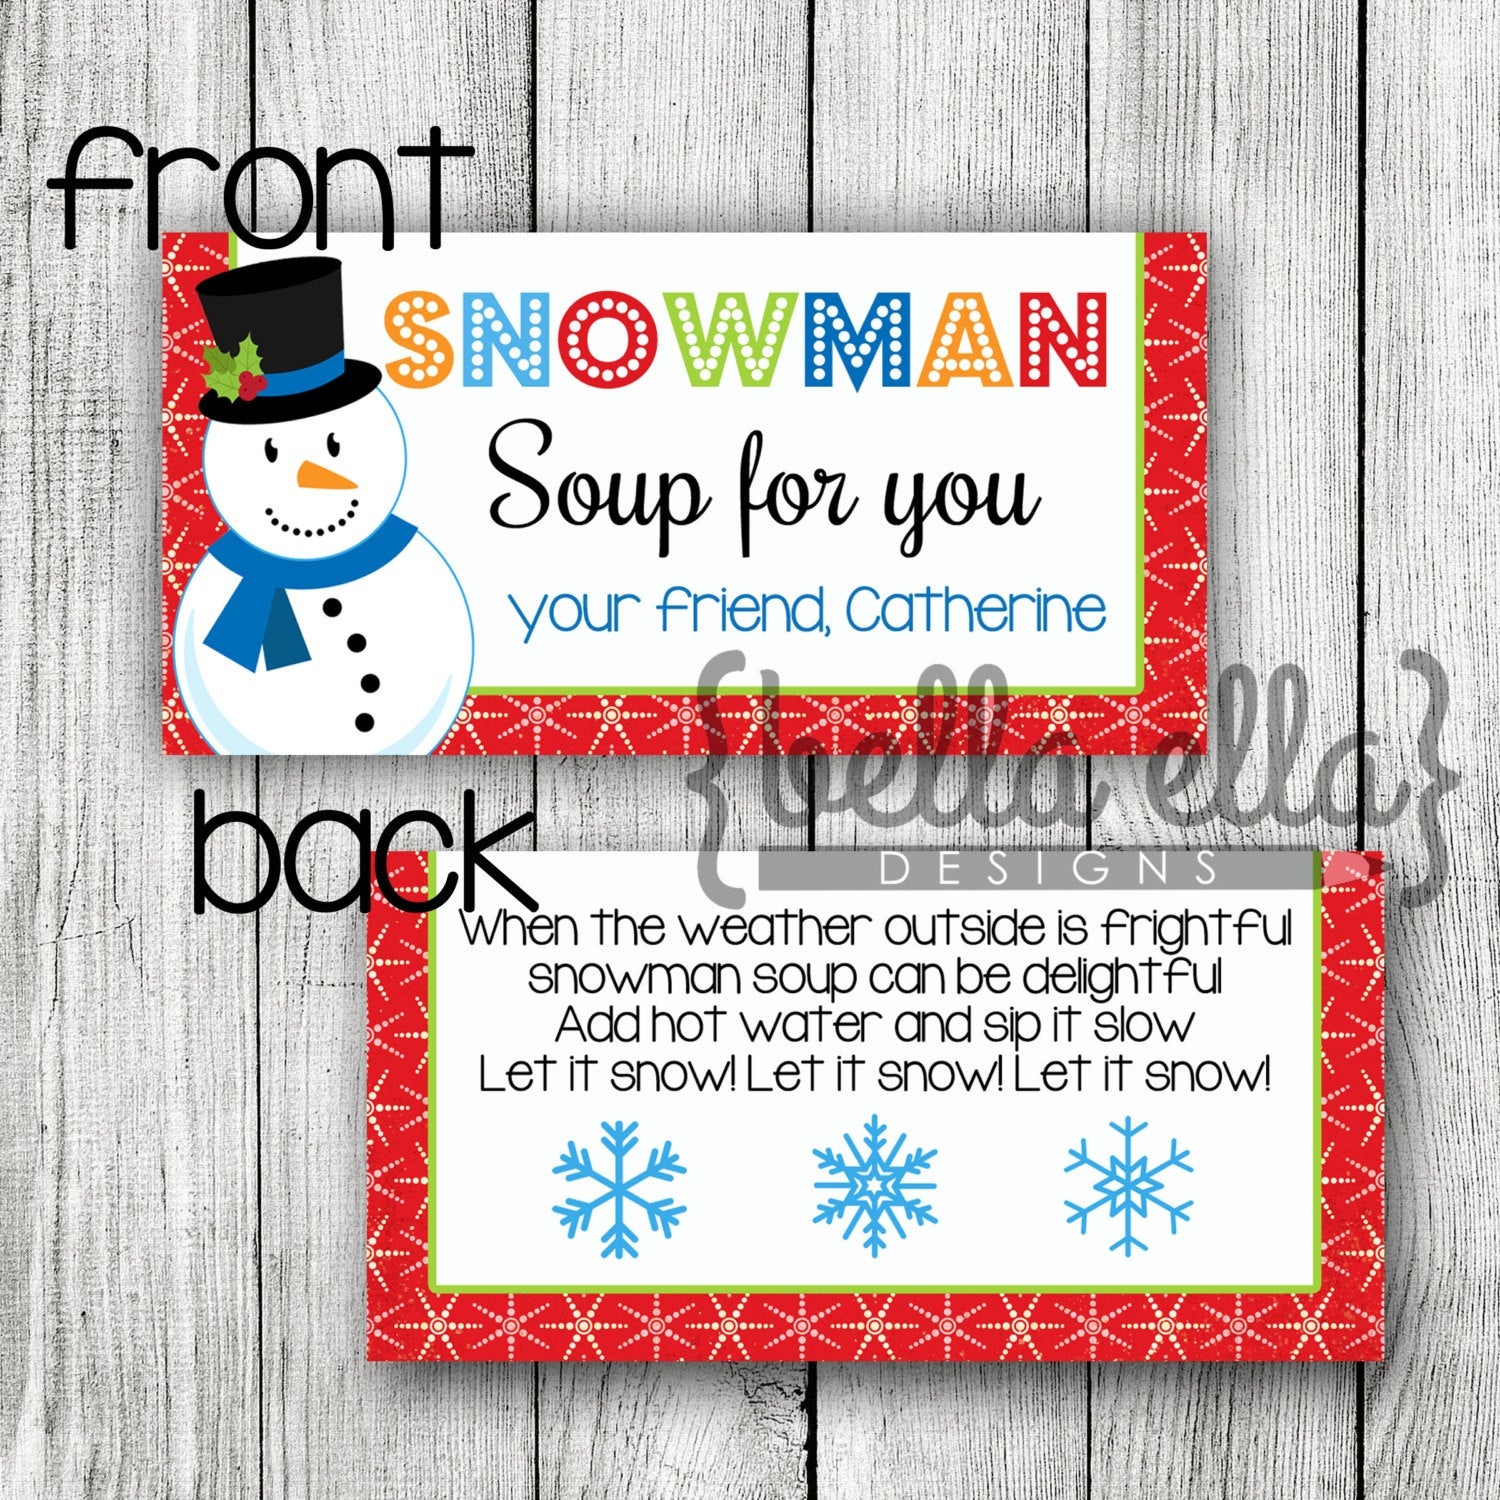 Snowman Soup Bag Topper Printable | Etsy - Snowman Soup Free Printable